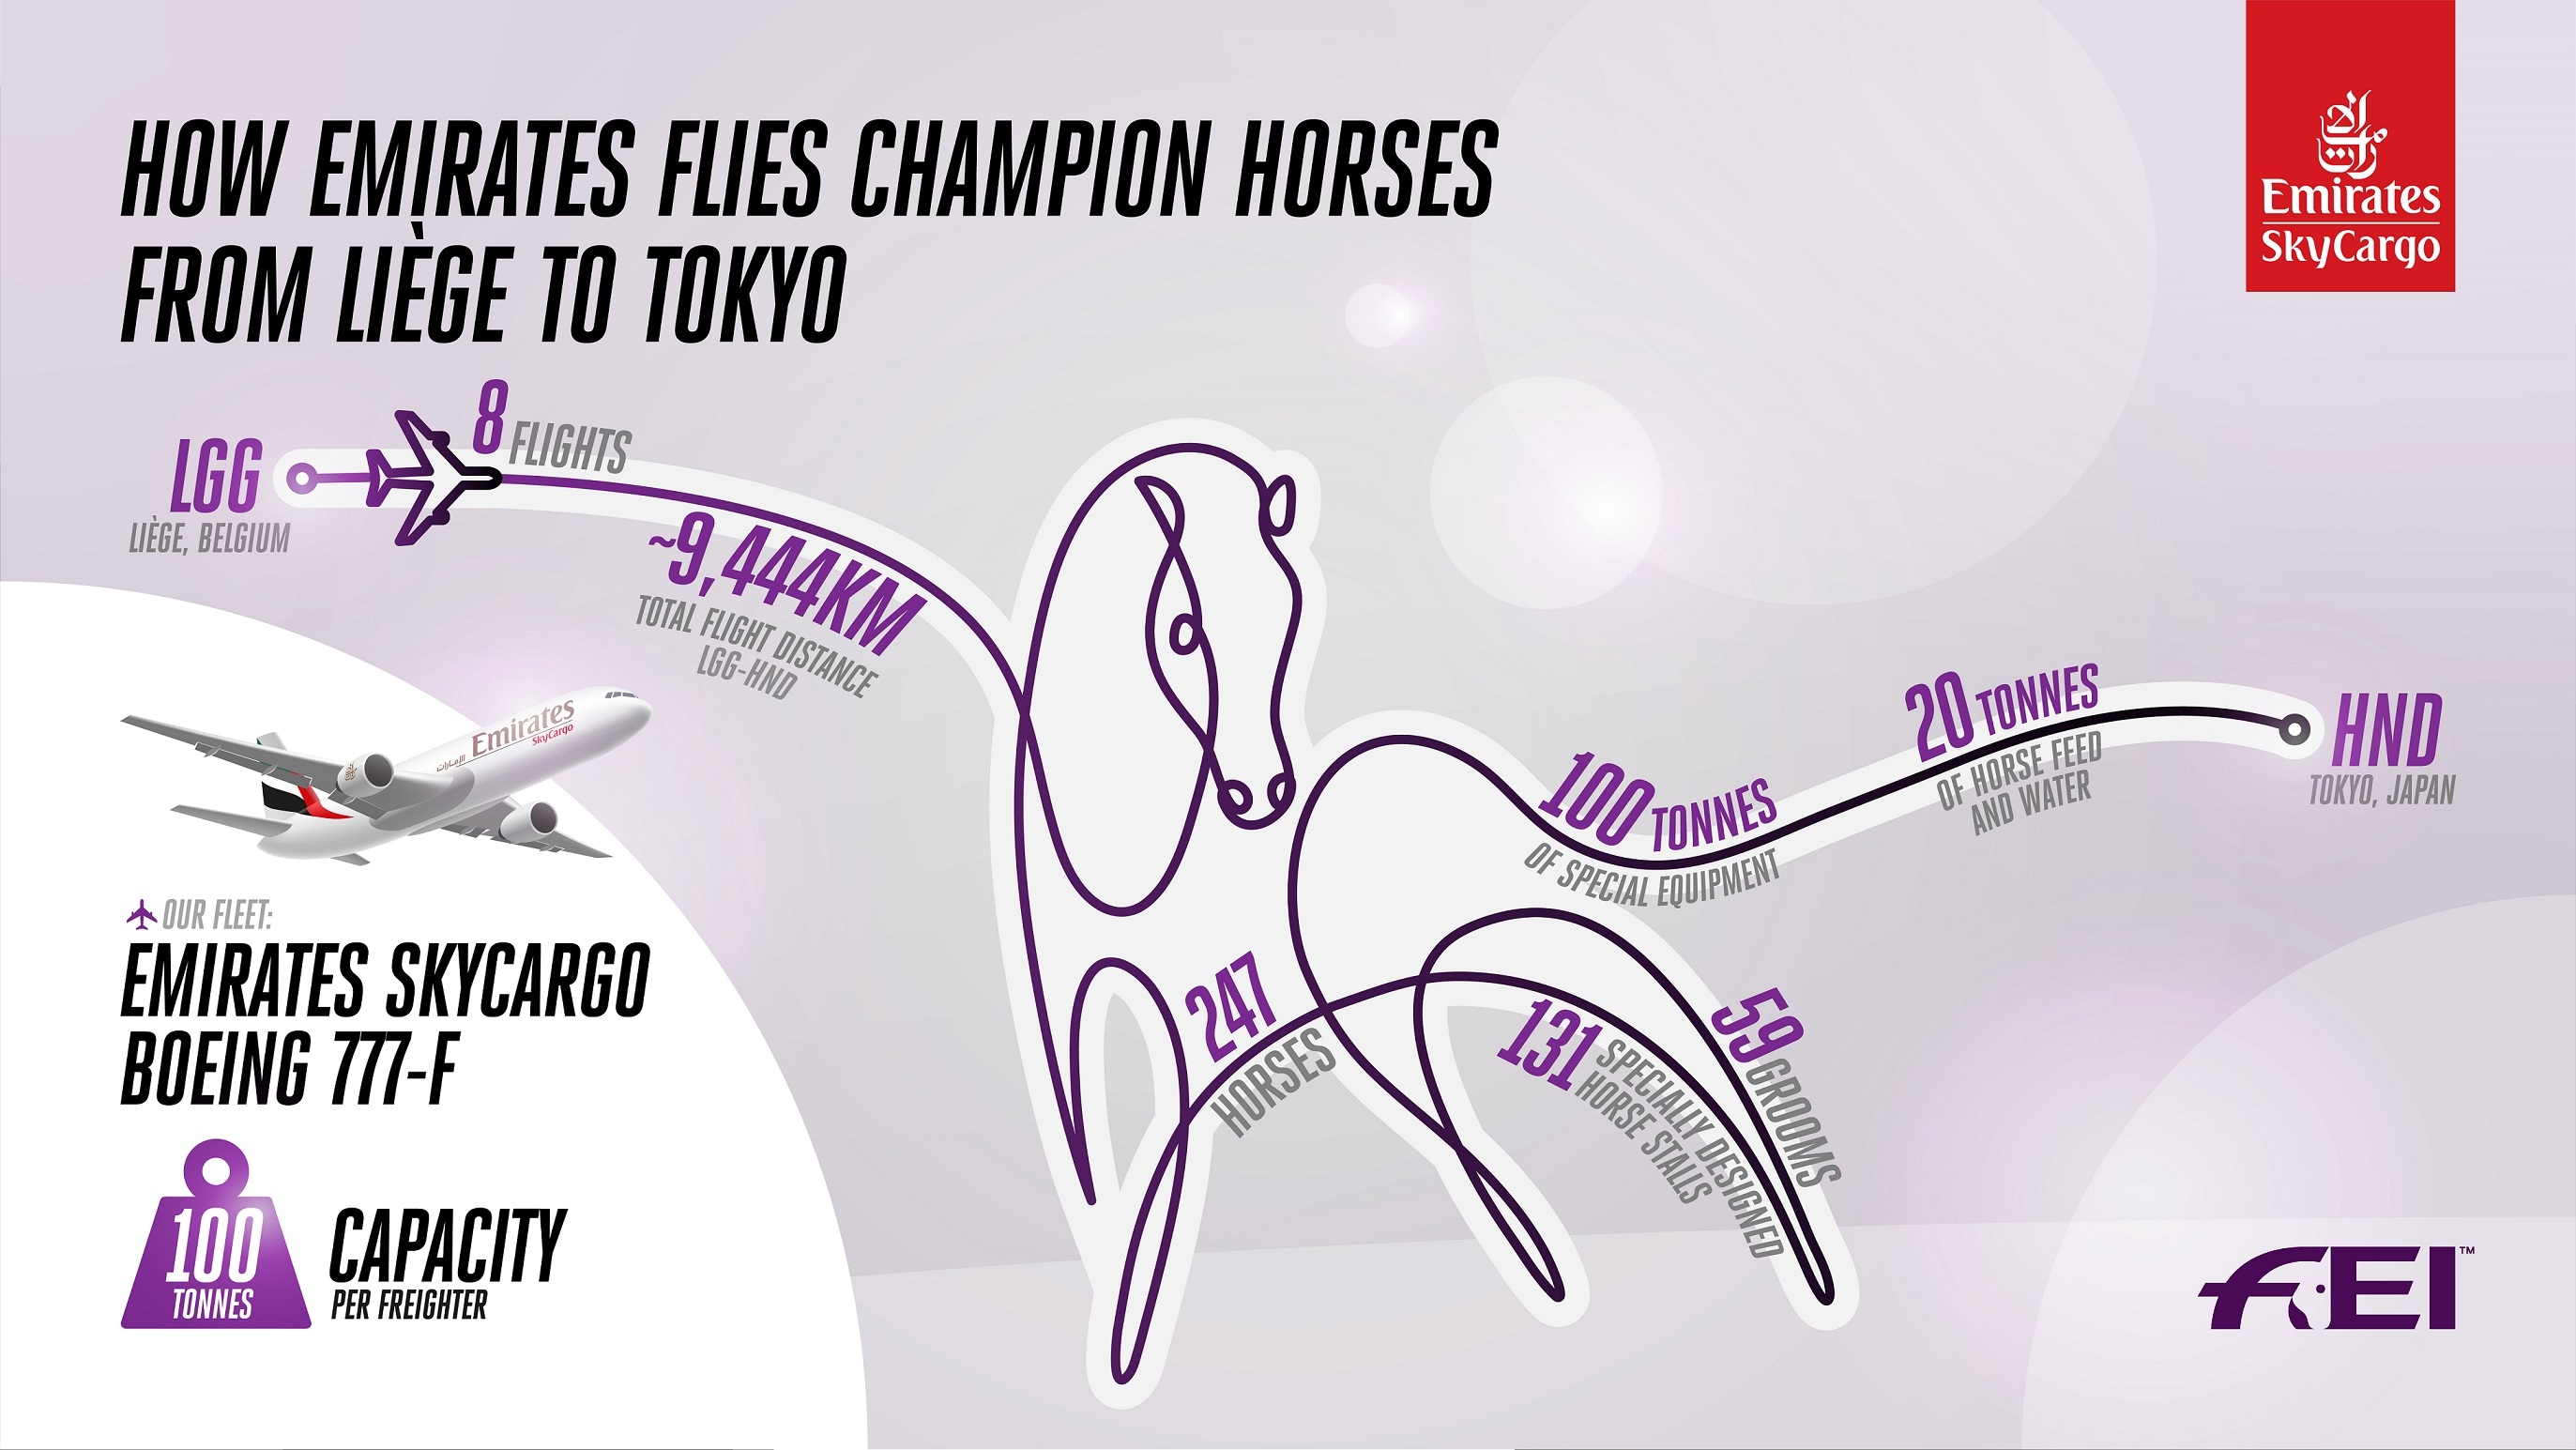 首架载有36匹马术比赛用马的航班已抵达东京羽田国际机场
-深圳货运公司